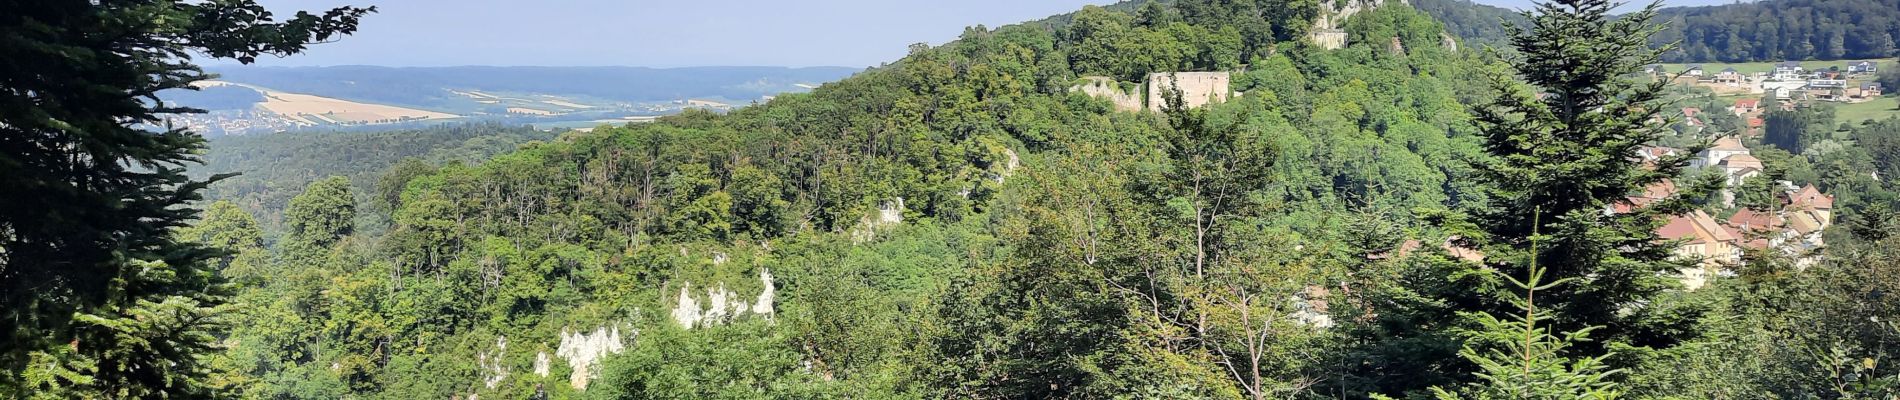 Randonnée Marche Ferrette - Ferrette ,château, grotte des nains,rossberg - Photo